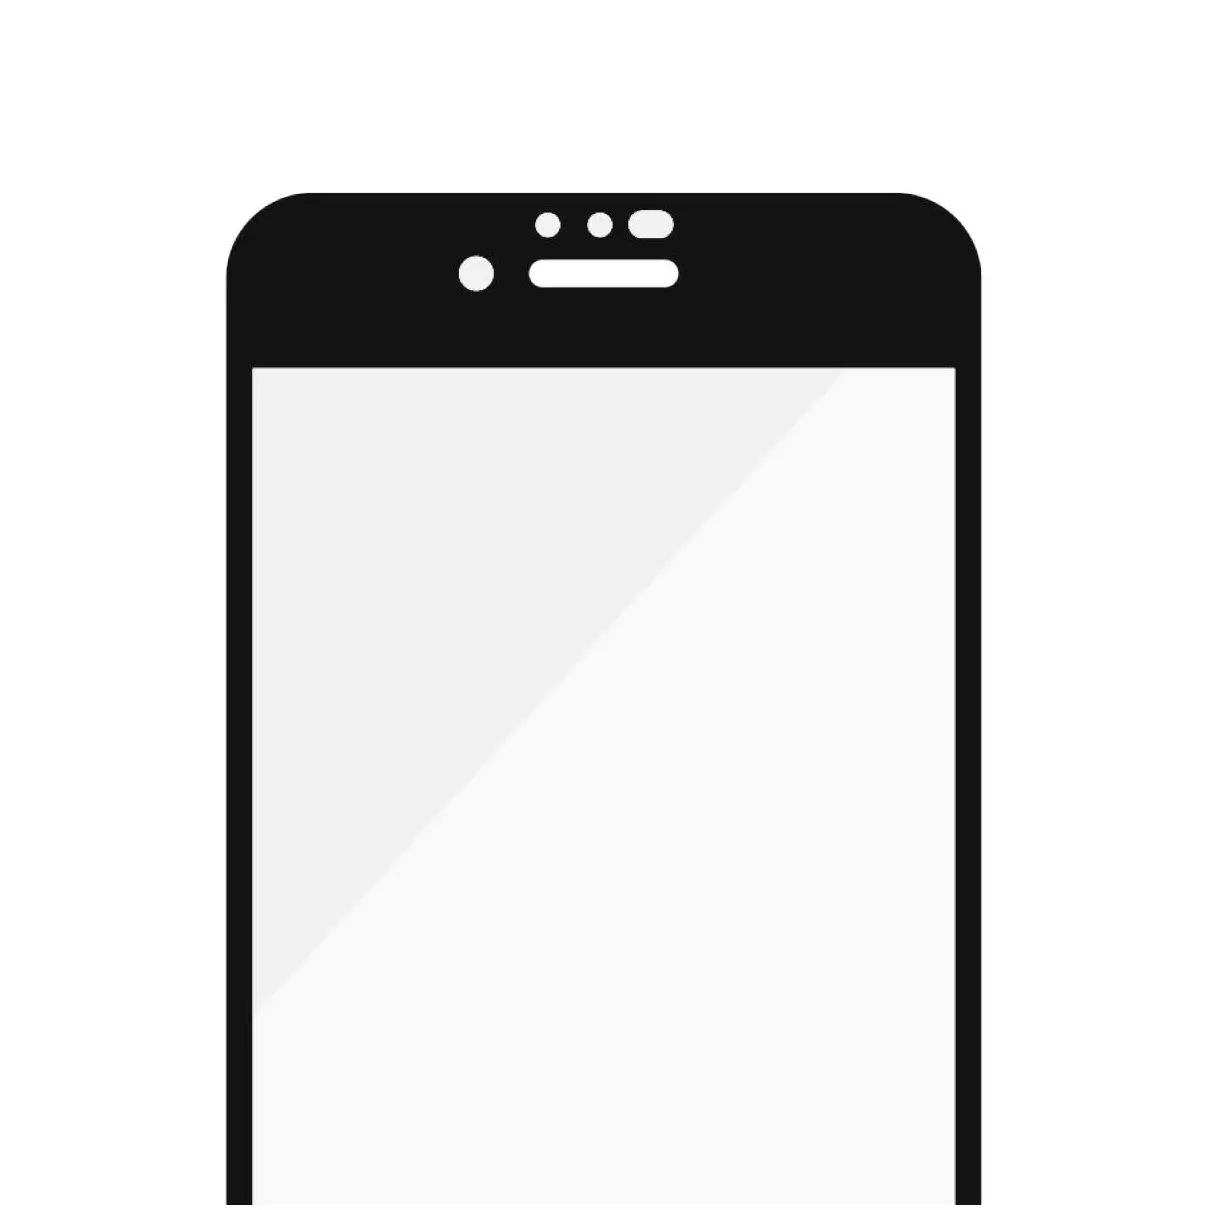 PanzerGlass Apple iPhone 6/6s/7/8/SE (2020) Case Friendly Zwart